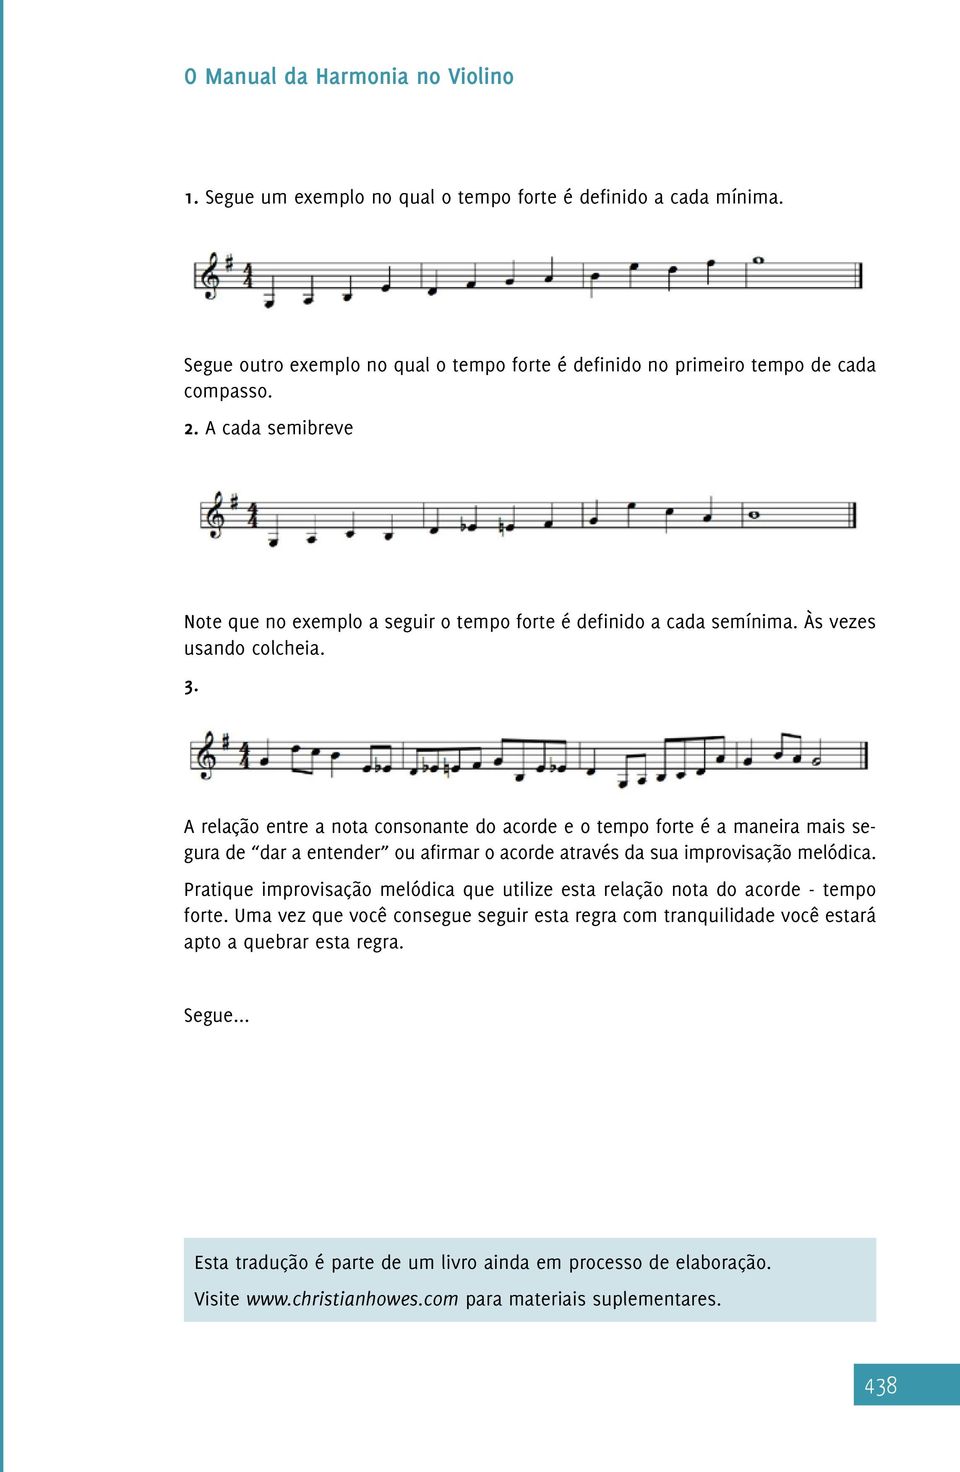 A relação entre a nota consonante do acorde e o tempo forte é a maneira mais segura de dar a entender ou afirmar o acorde através da sua improvisação melódica.